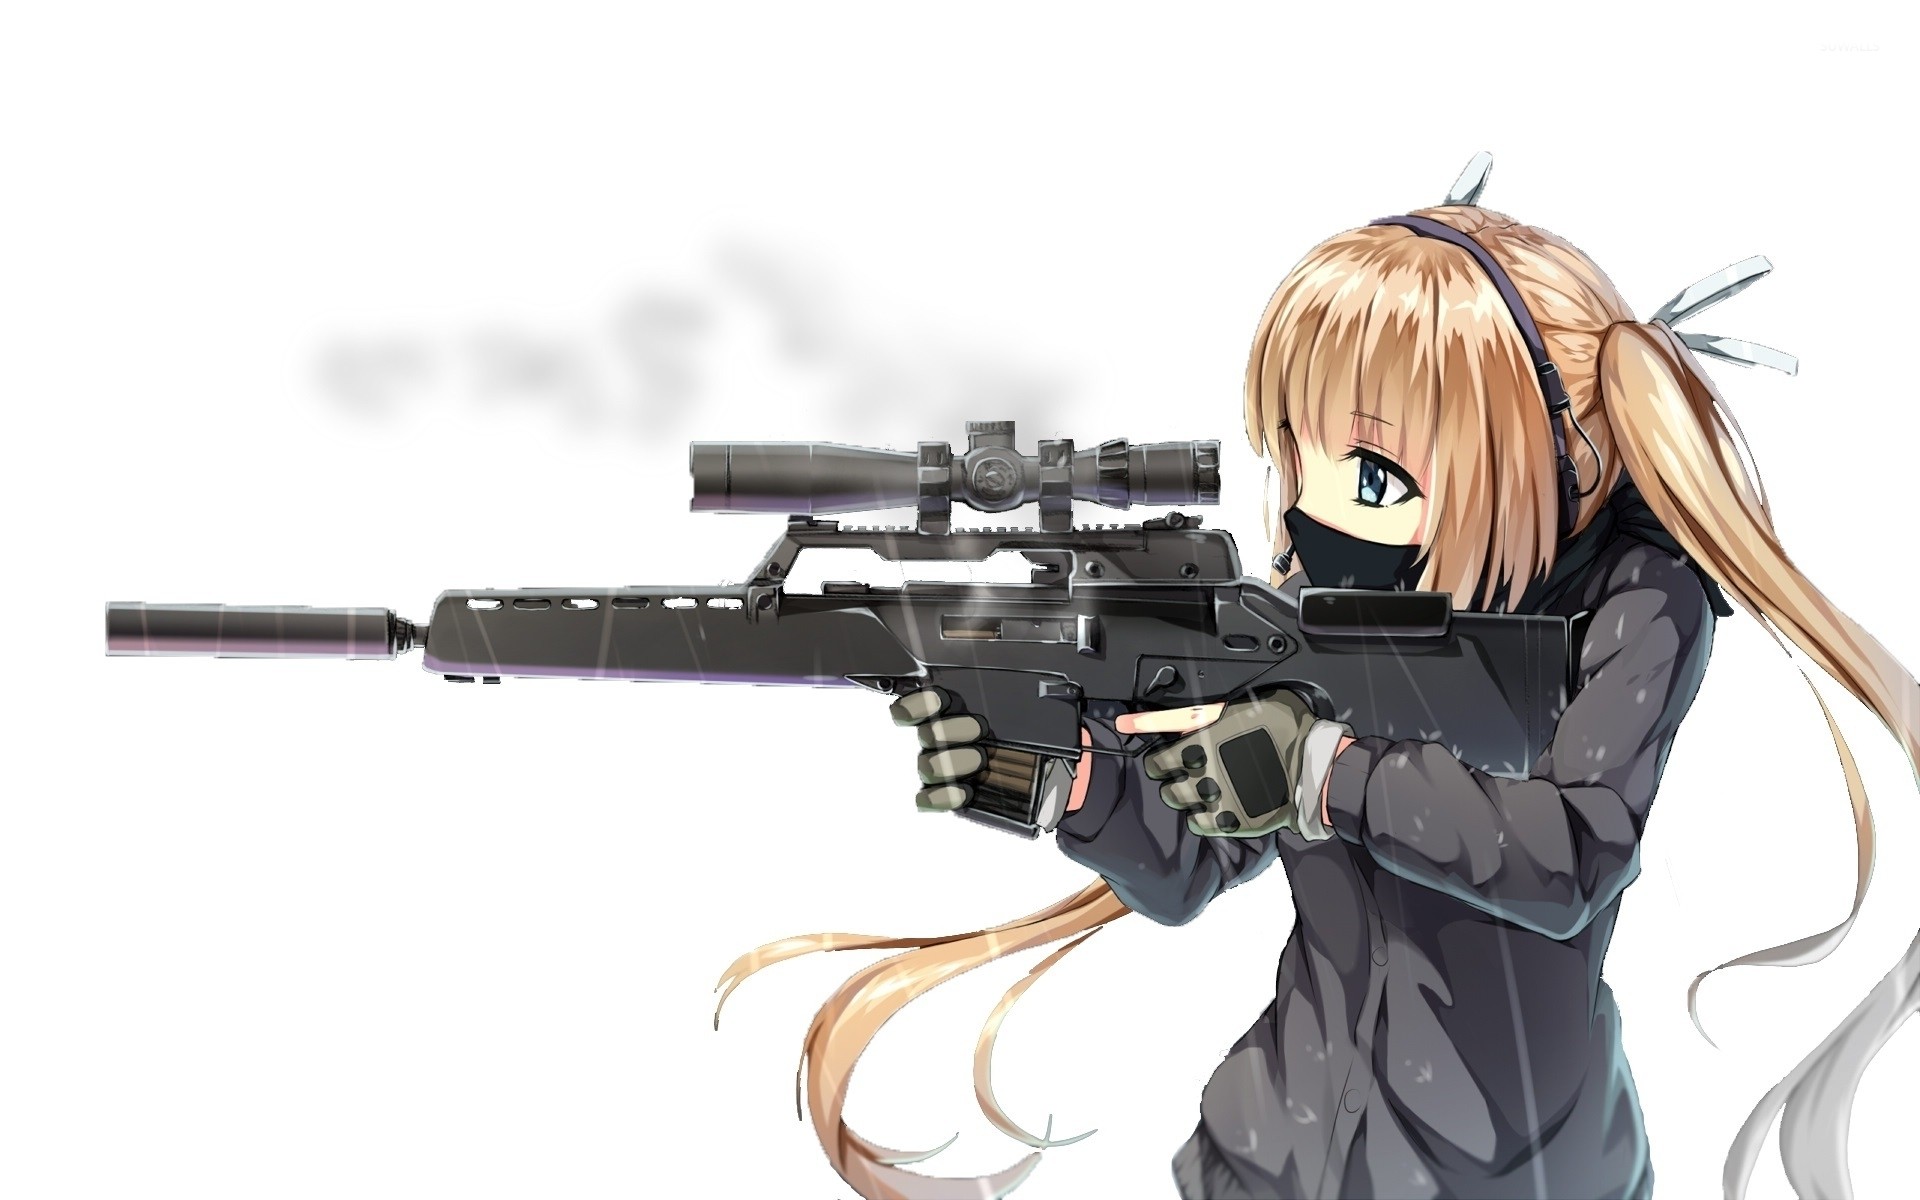 anime gun wallpaper,gun,firearm,assault rifle,cartoon,anime